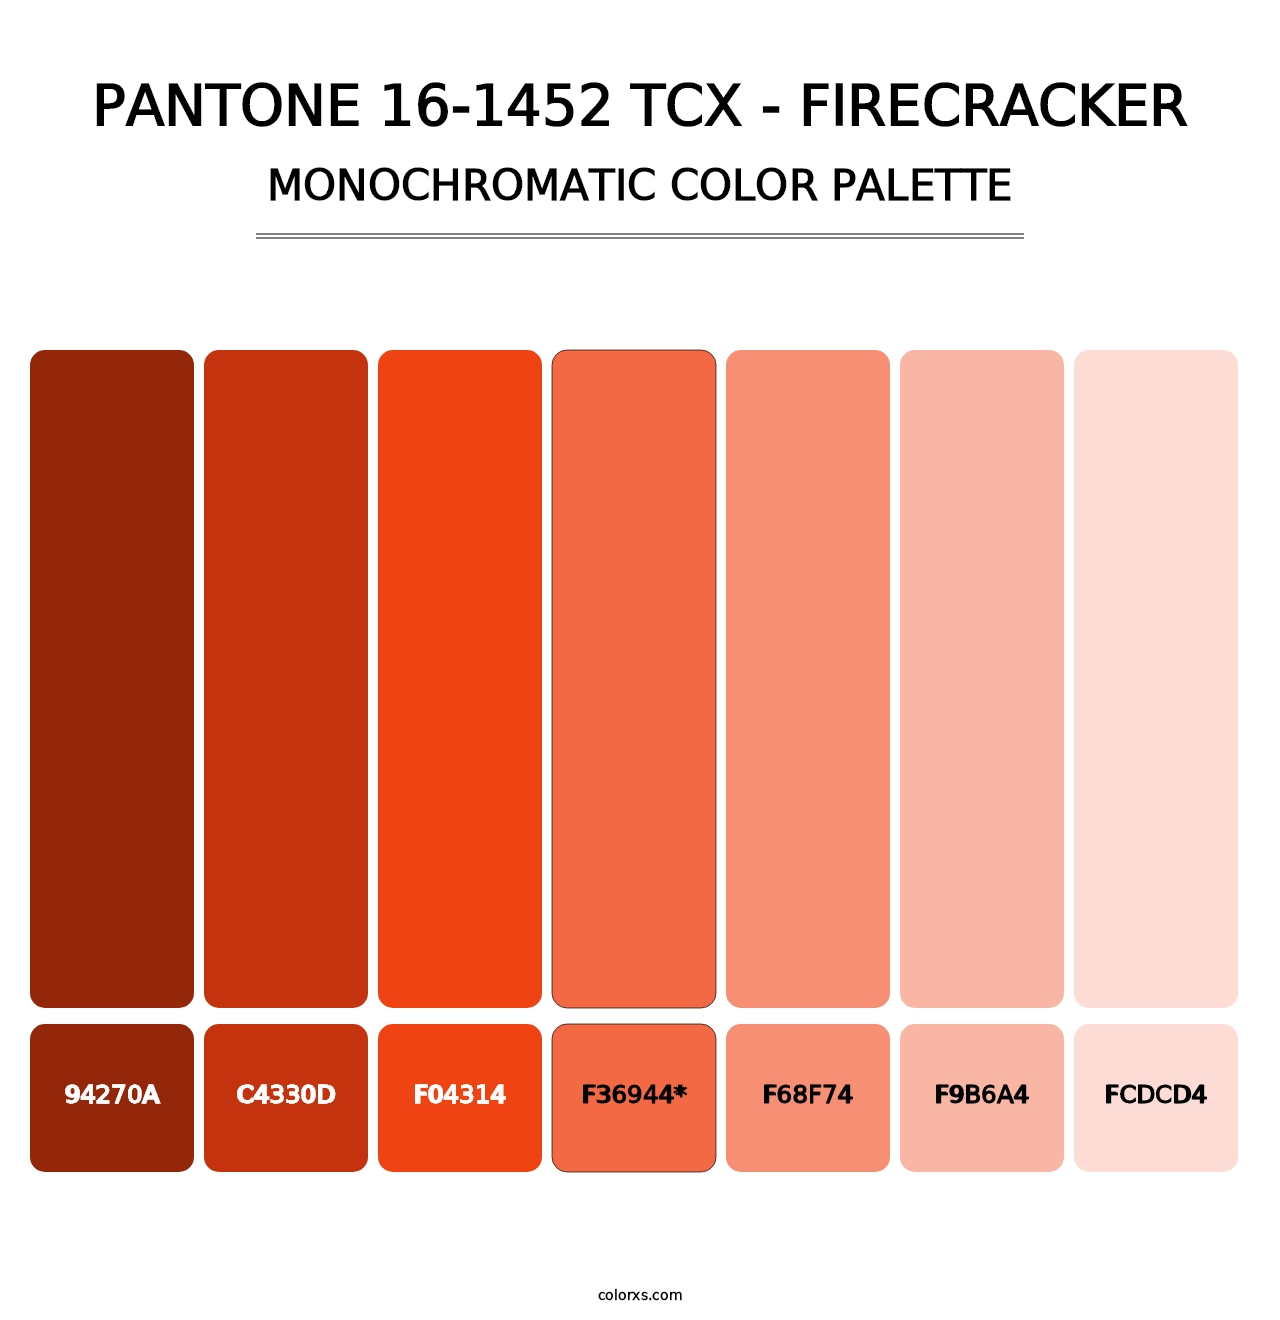 PANTONE 16-1452 TCX - Firecracker - Monochromatic Color Palette